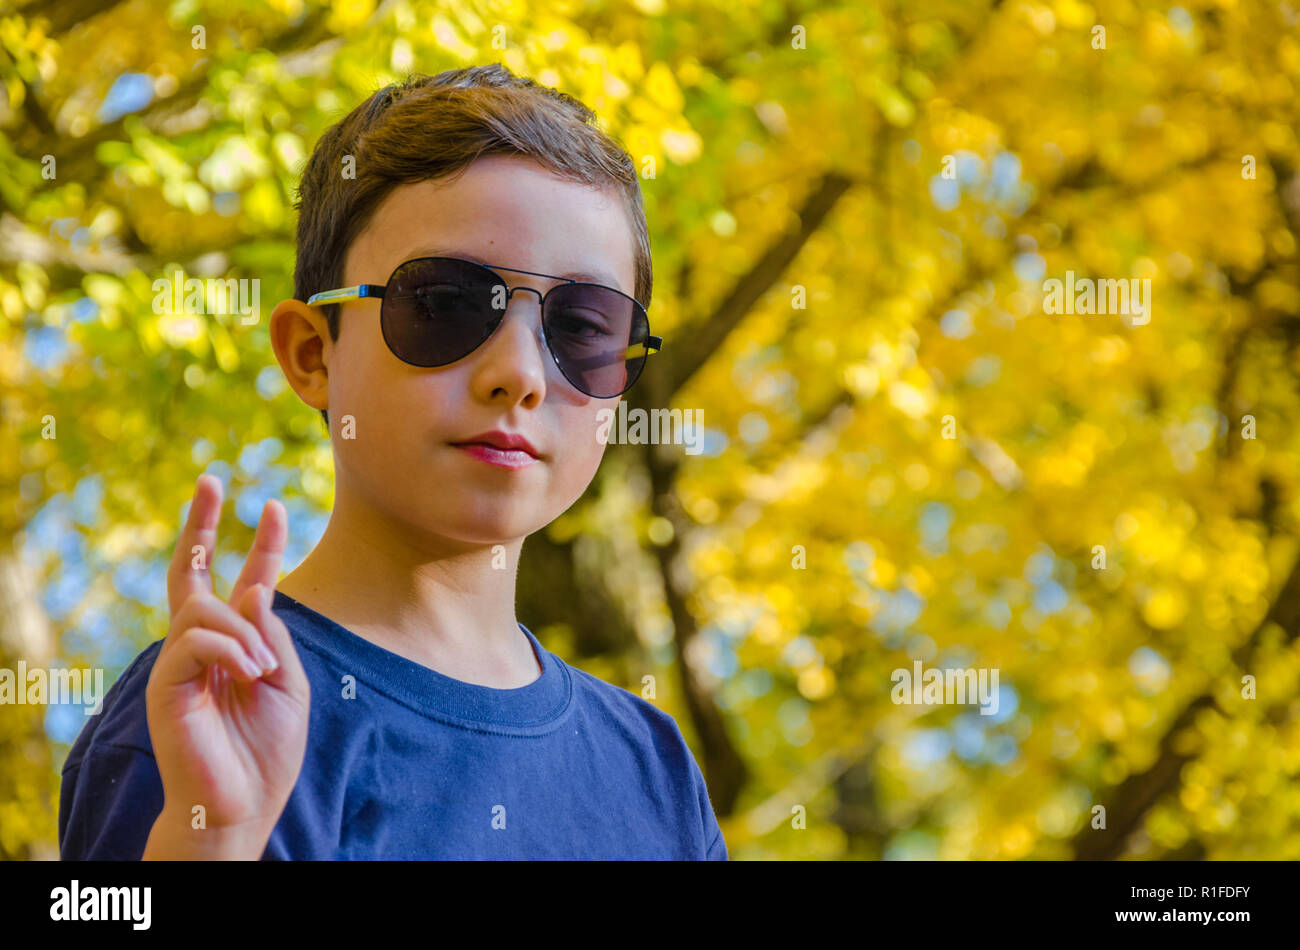 Un portrait d'un jeune garçon contre les feuilles d'automne. Banque D'Images